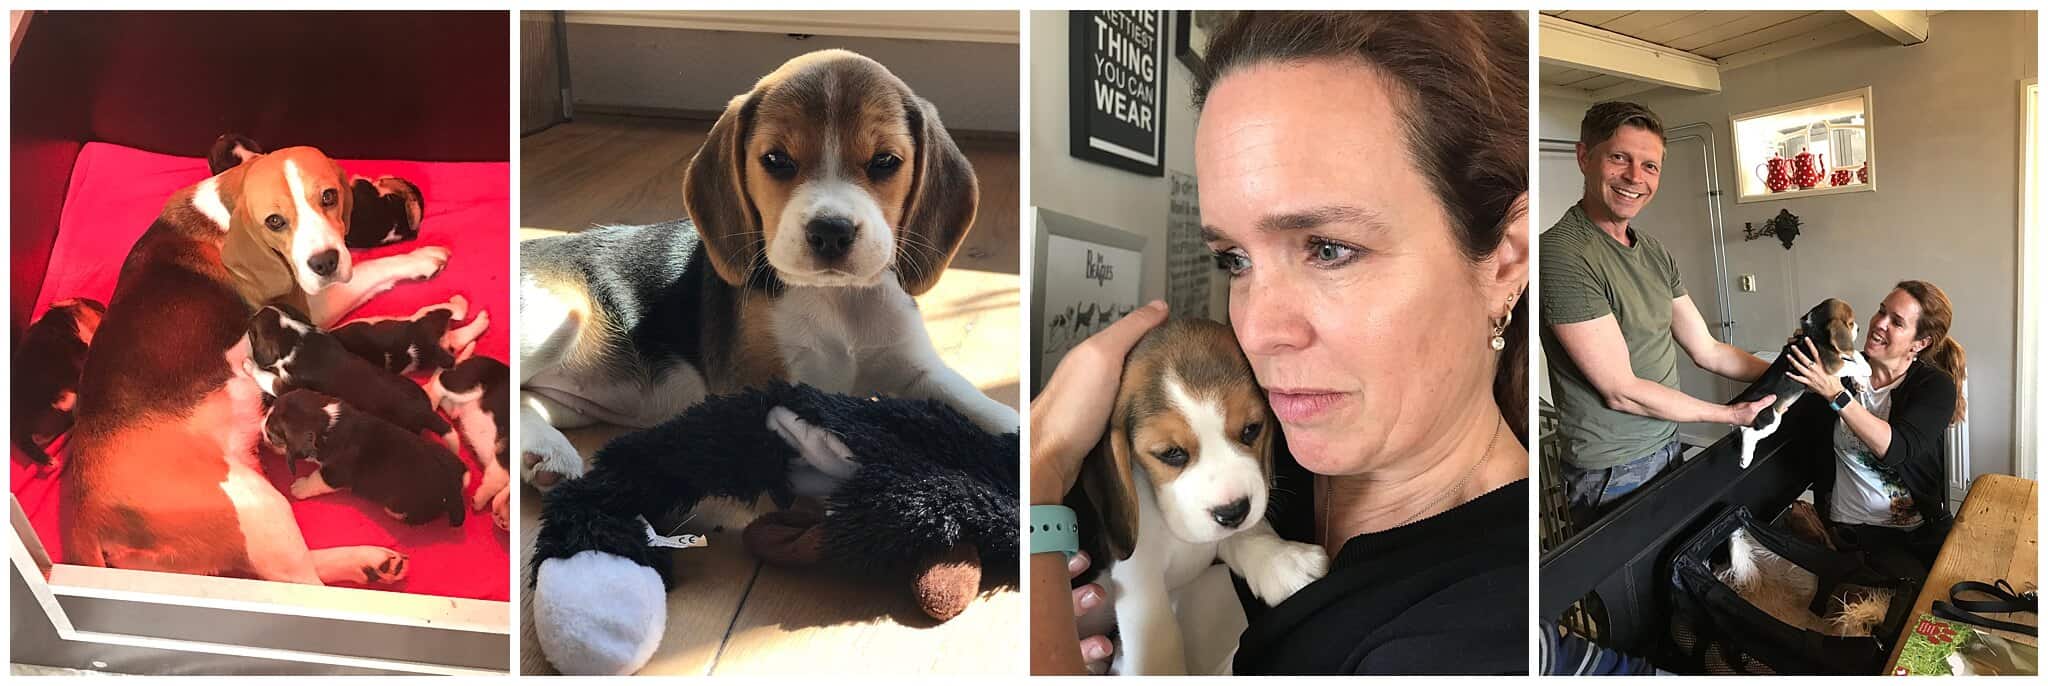 De eerste foto's van pup Bobbi de beagle